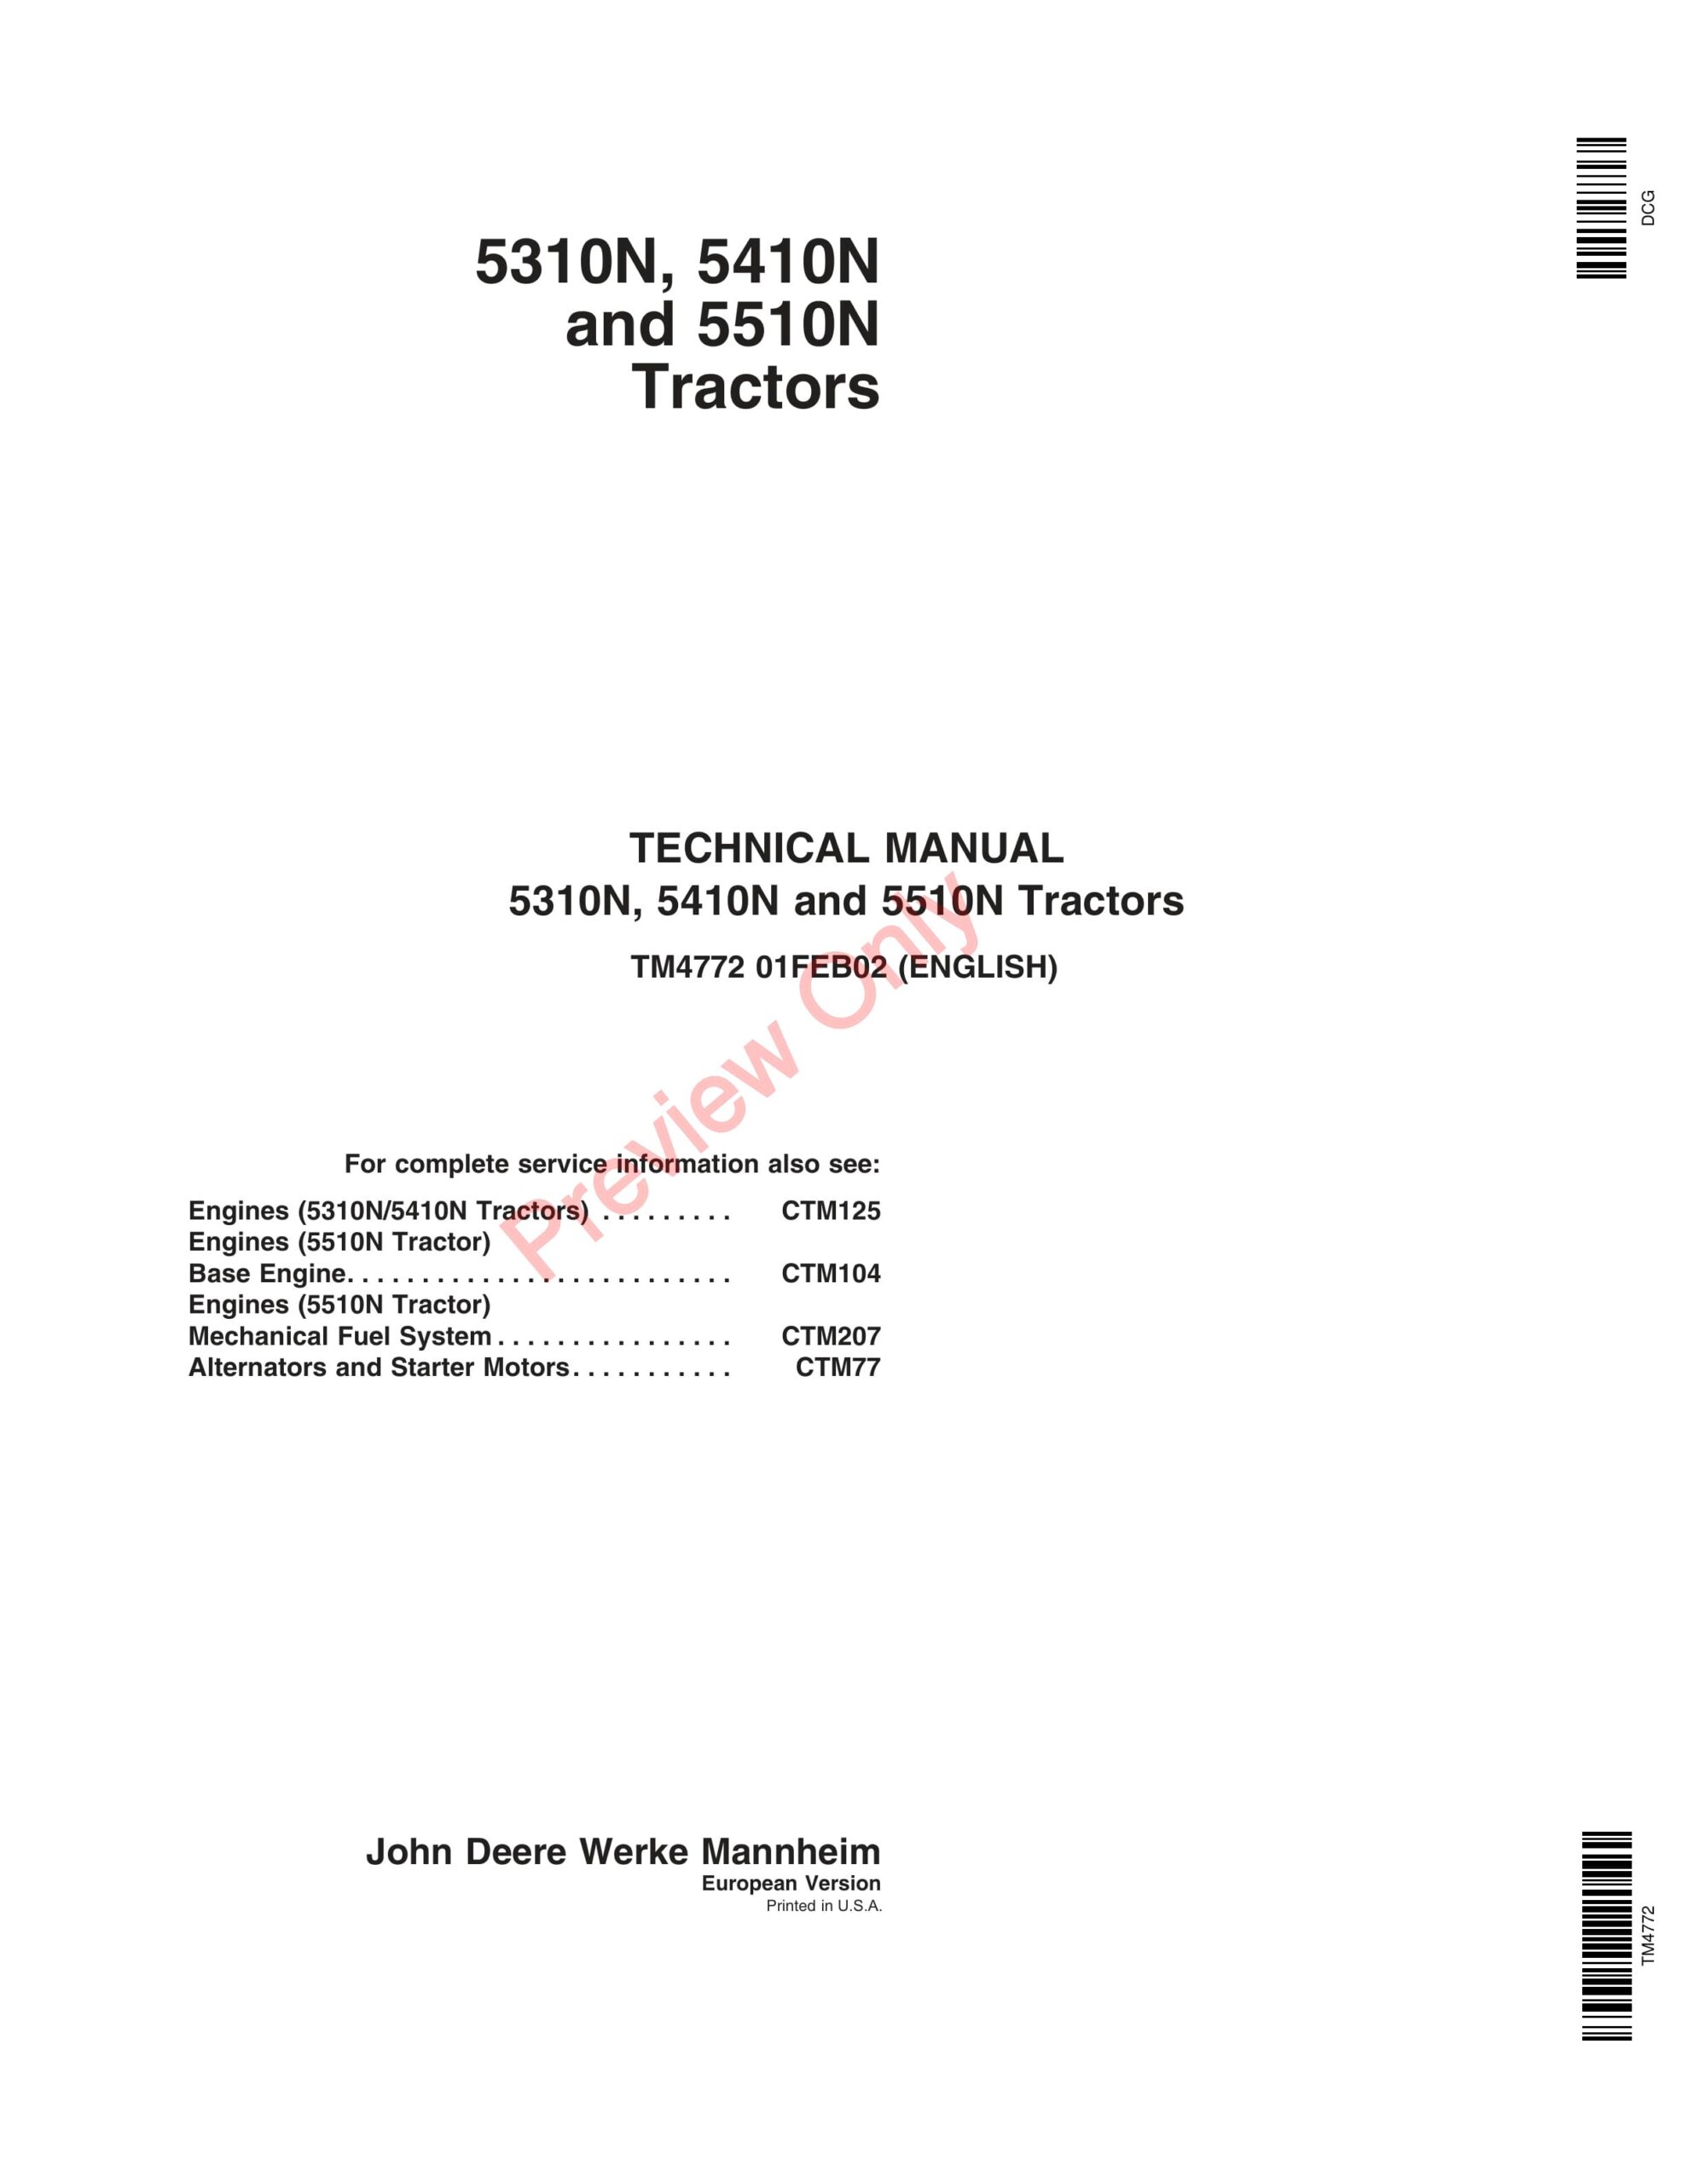 John Deere 5310N, 5410N and 5510N Tractors Technical Manual TM4772 01FEB02-1